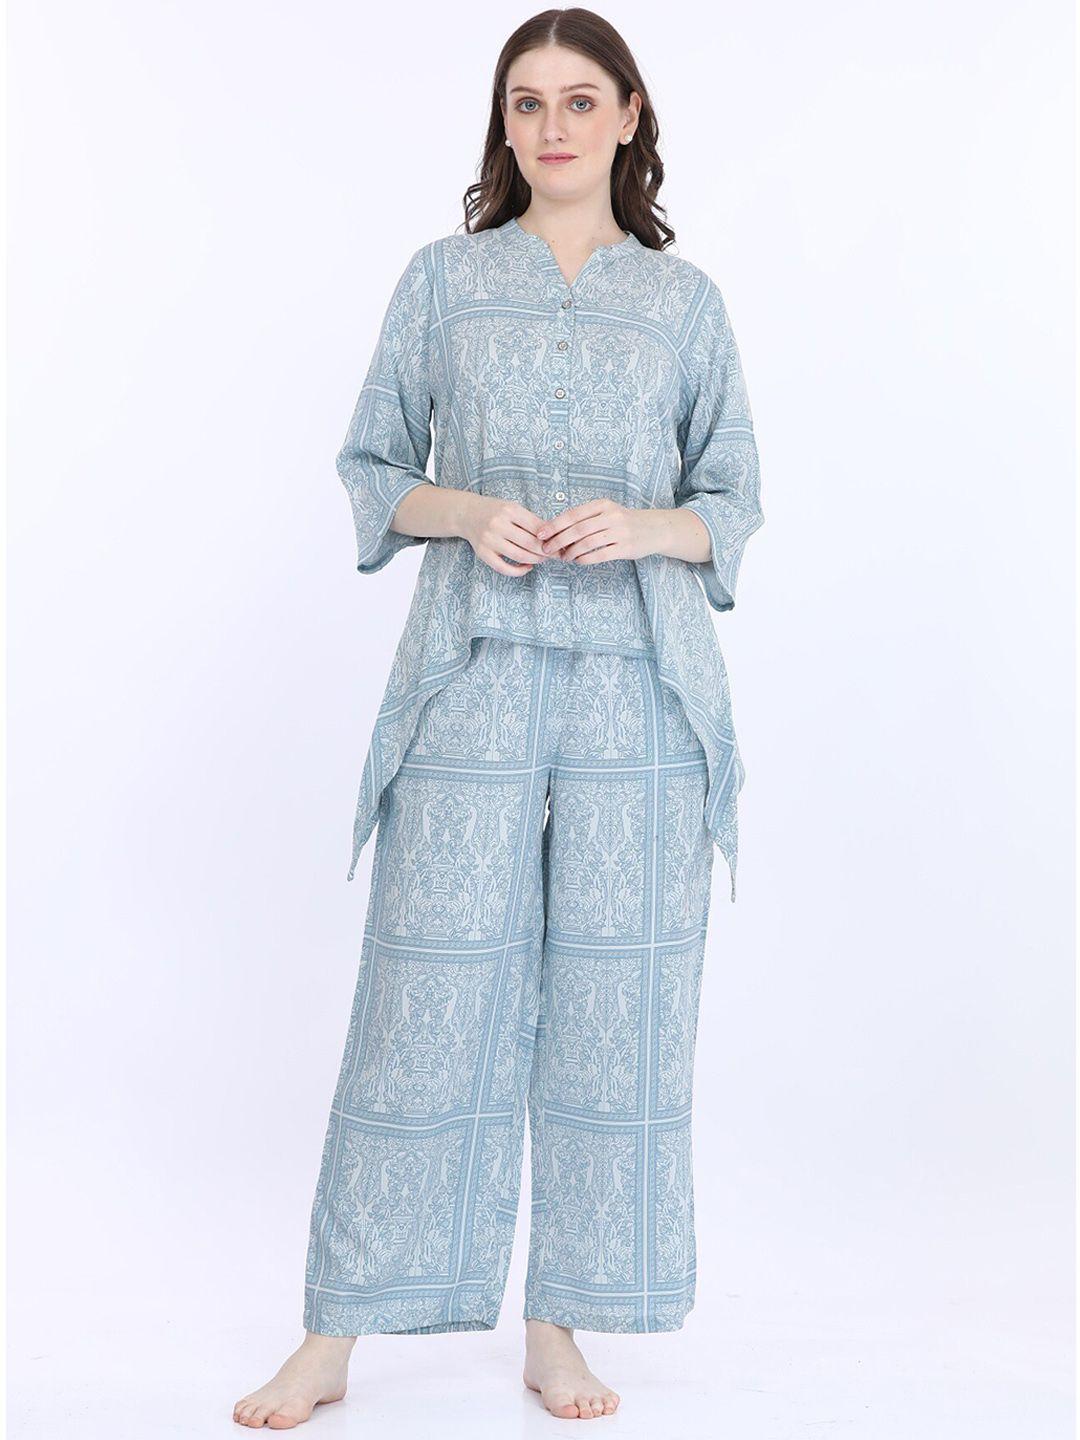 maysixty ethnic motifs printed mandarin collar night suit